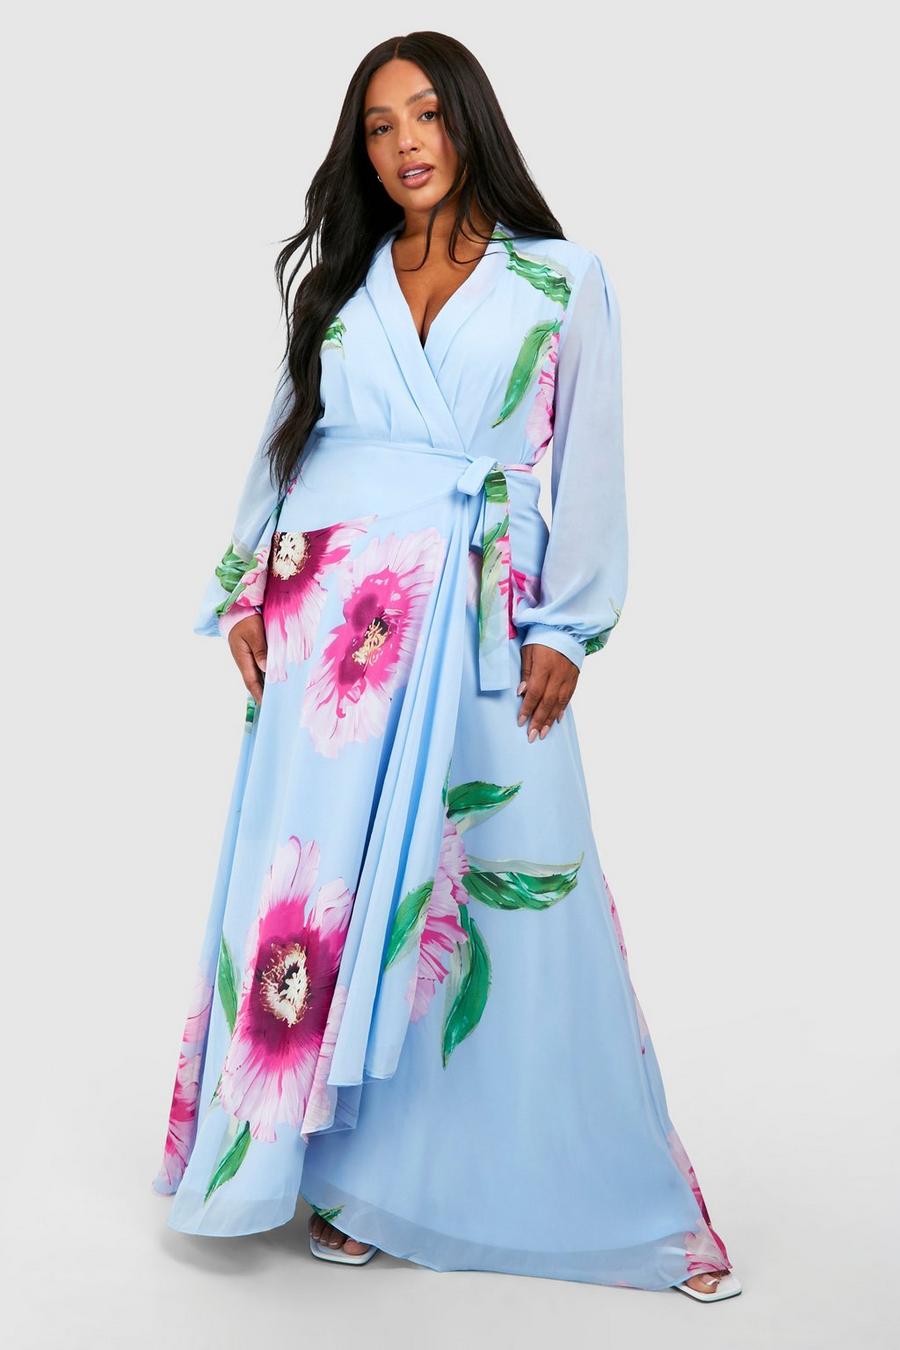 Blue Plus Floral Print Long Sleeve Wrap Maxi Dress have 